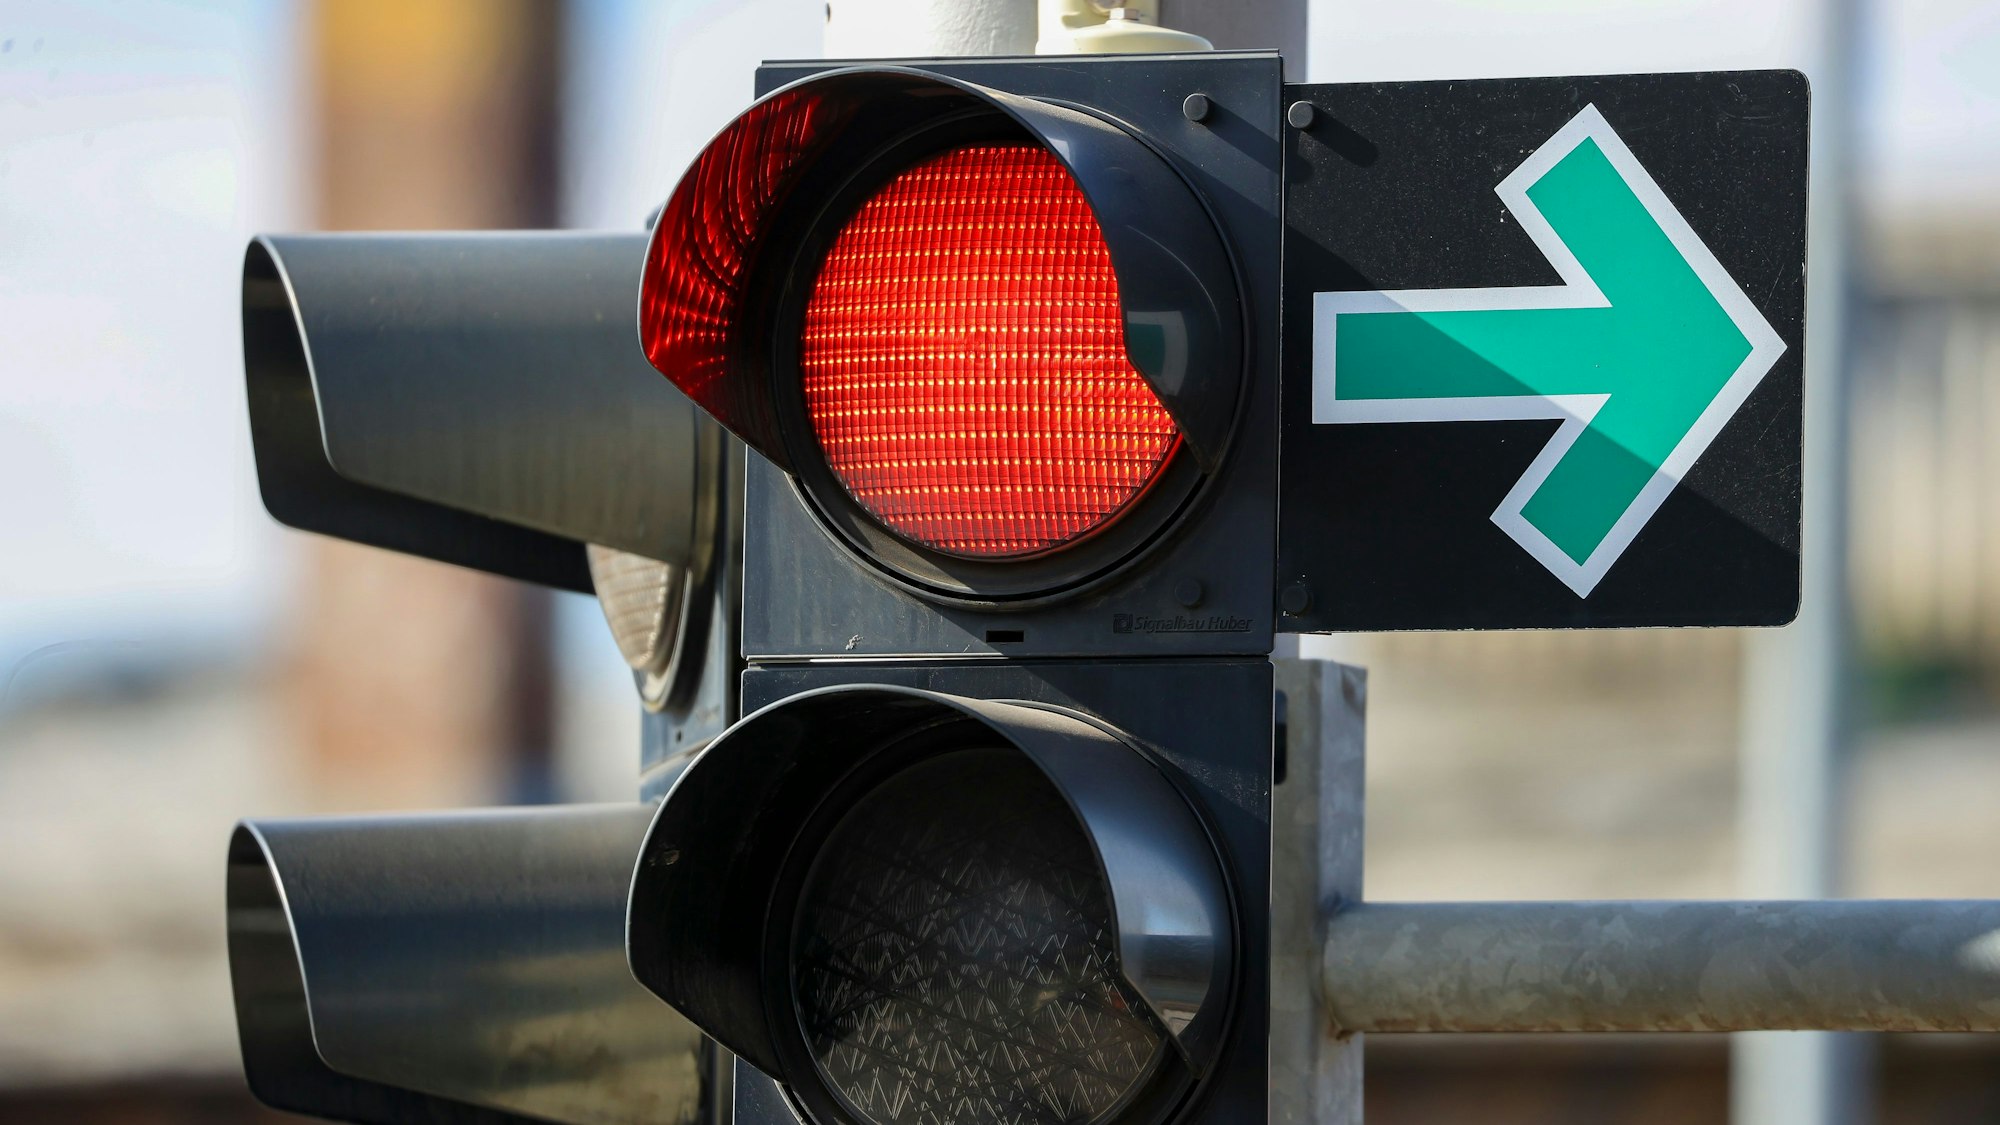 Ein grüner Pfeil hängt neben einer roten Ampel an einer Kreuzung und erlaubt das Abbiegen trotz Rotlicht.